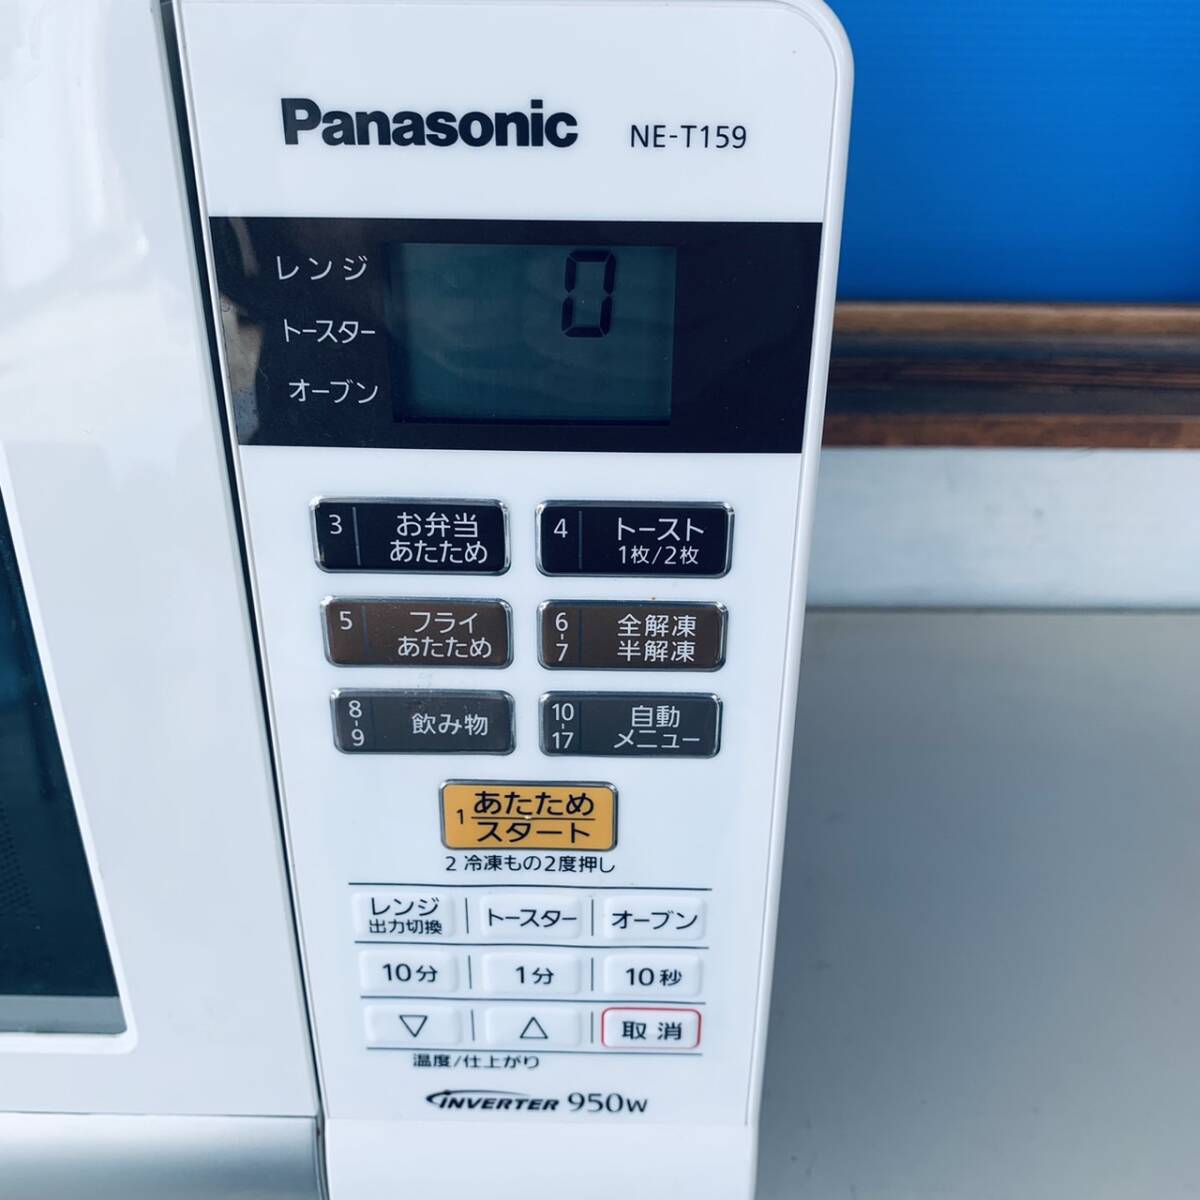 2017 год производства Panasonic Panasonic erek микроволновая печь NE-T159-W 15L белый 950W инвертер масса сенсор K3532